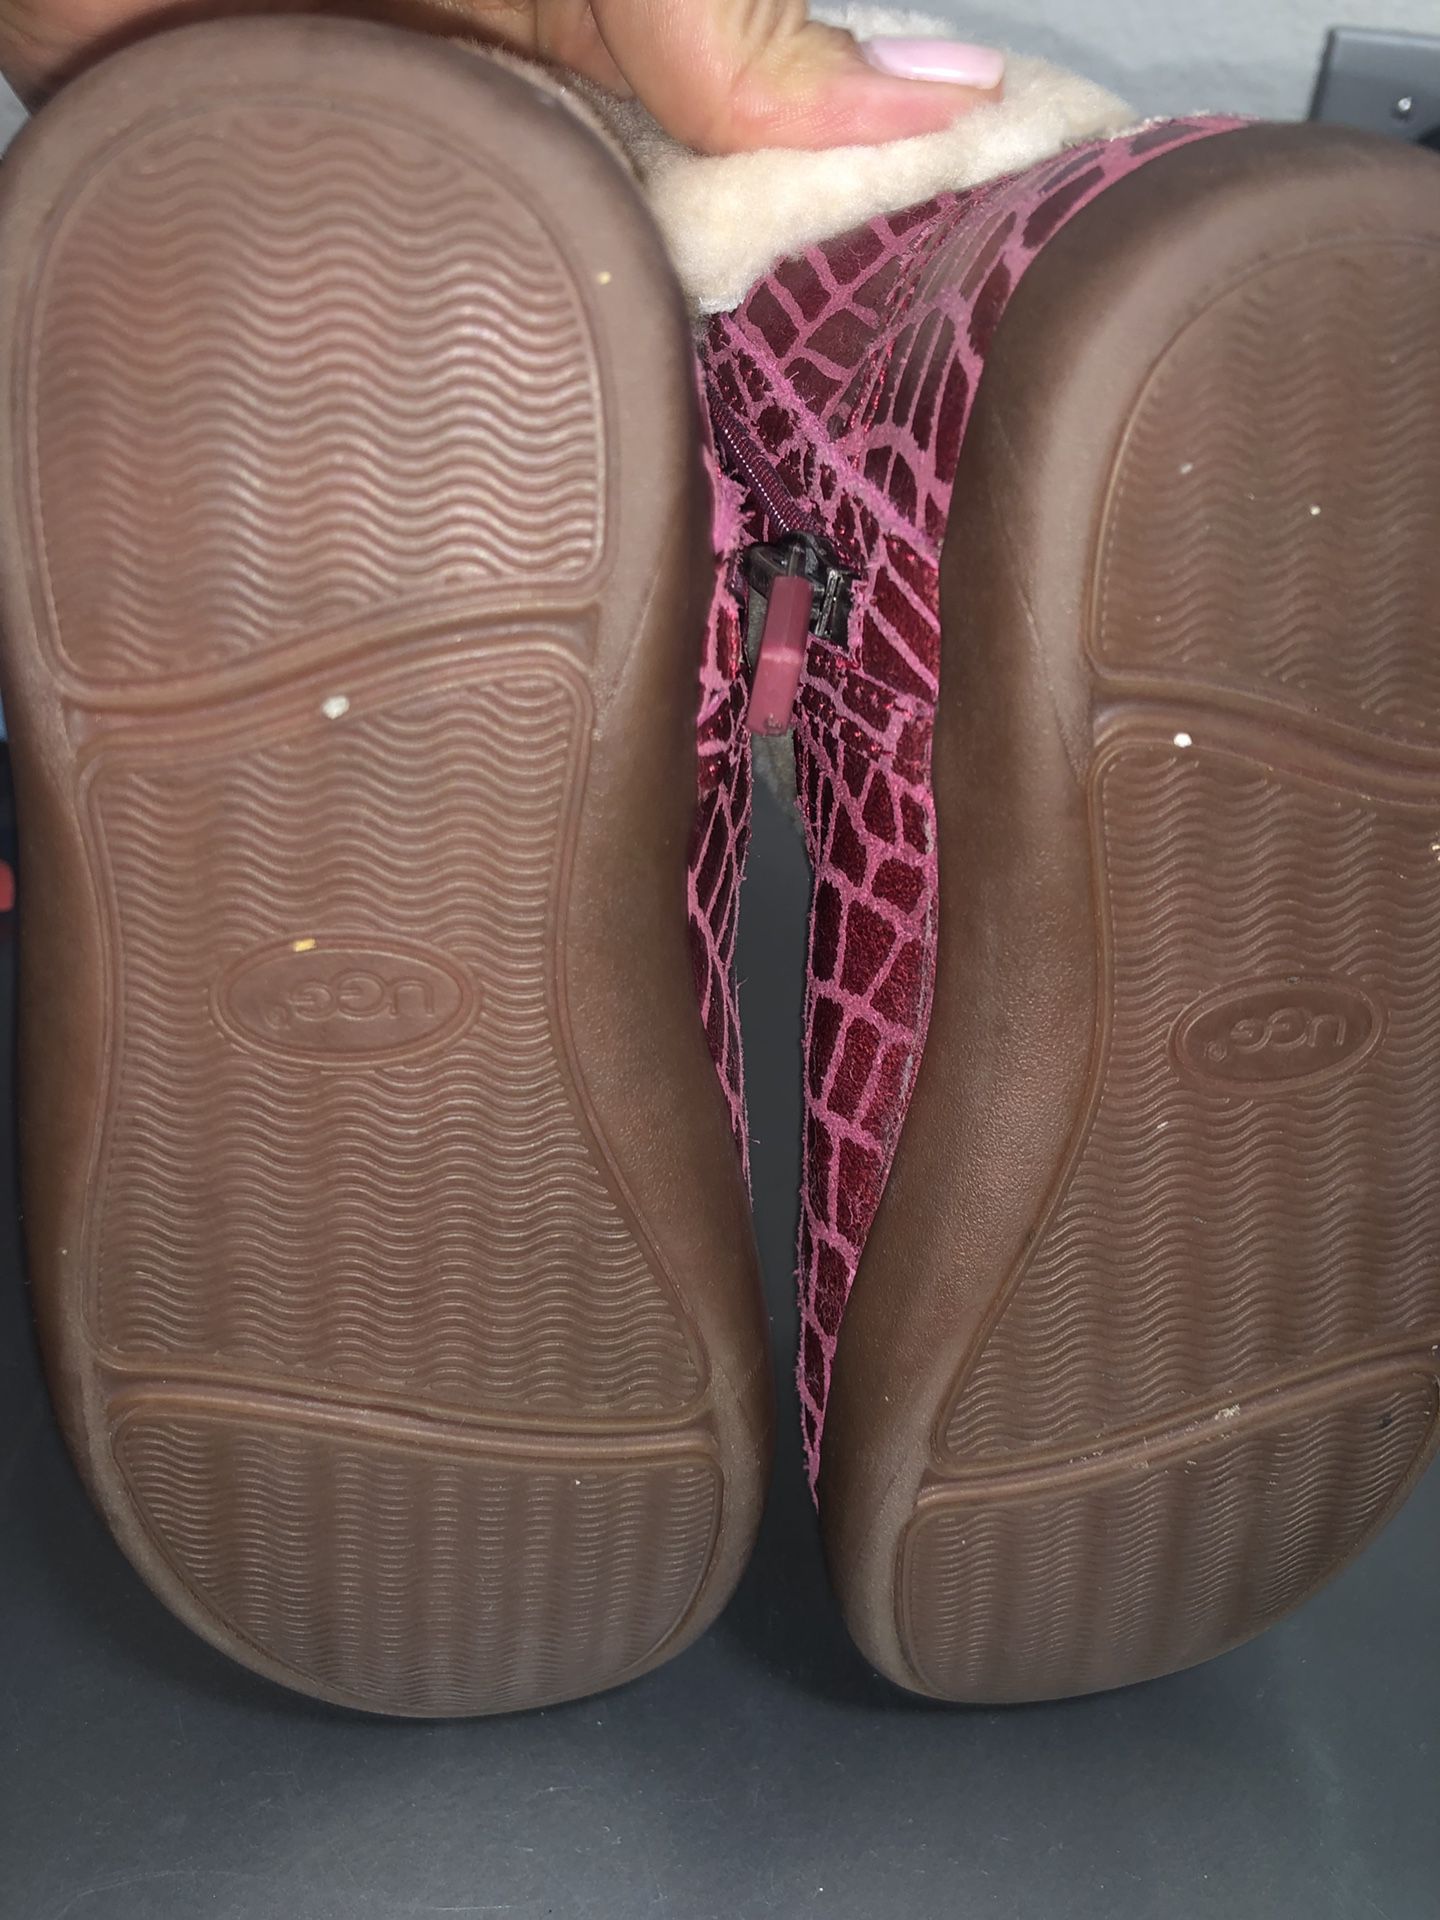 UGG jorie croc boots toddler girls size 9